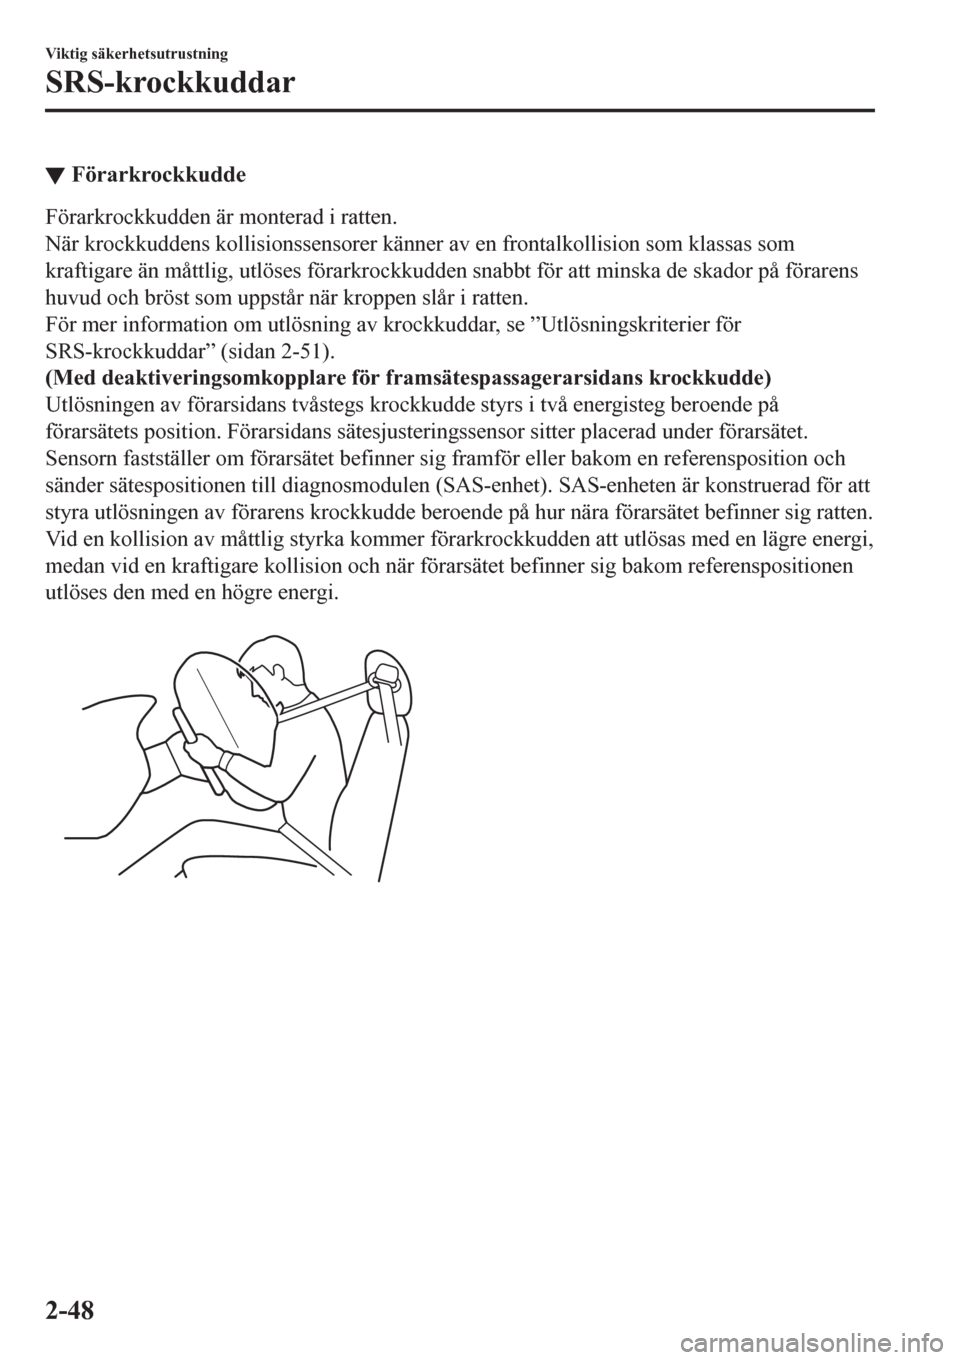 MAZDA MODEL CX-3 2016  Ägarmanual (in Swedish) ▼Förarkrockkudde
Förarkrockkudden är monterad i ratten.
När krockkuddens kollisionssensorer känner av en frontalkollision som klassas som
kraftigare än måttlig, utlöses förarkrockkudden sna